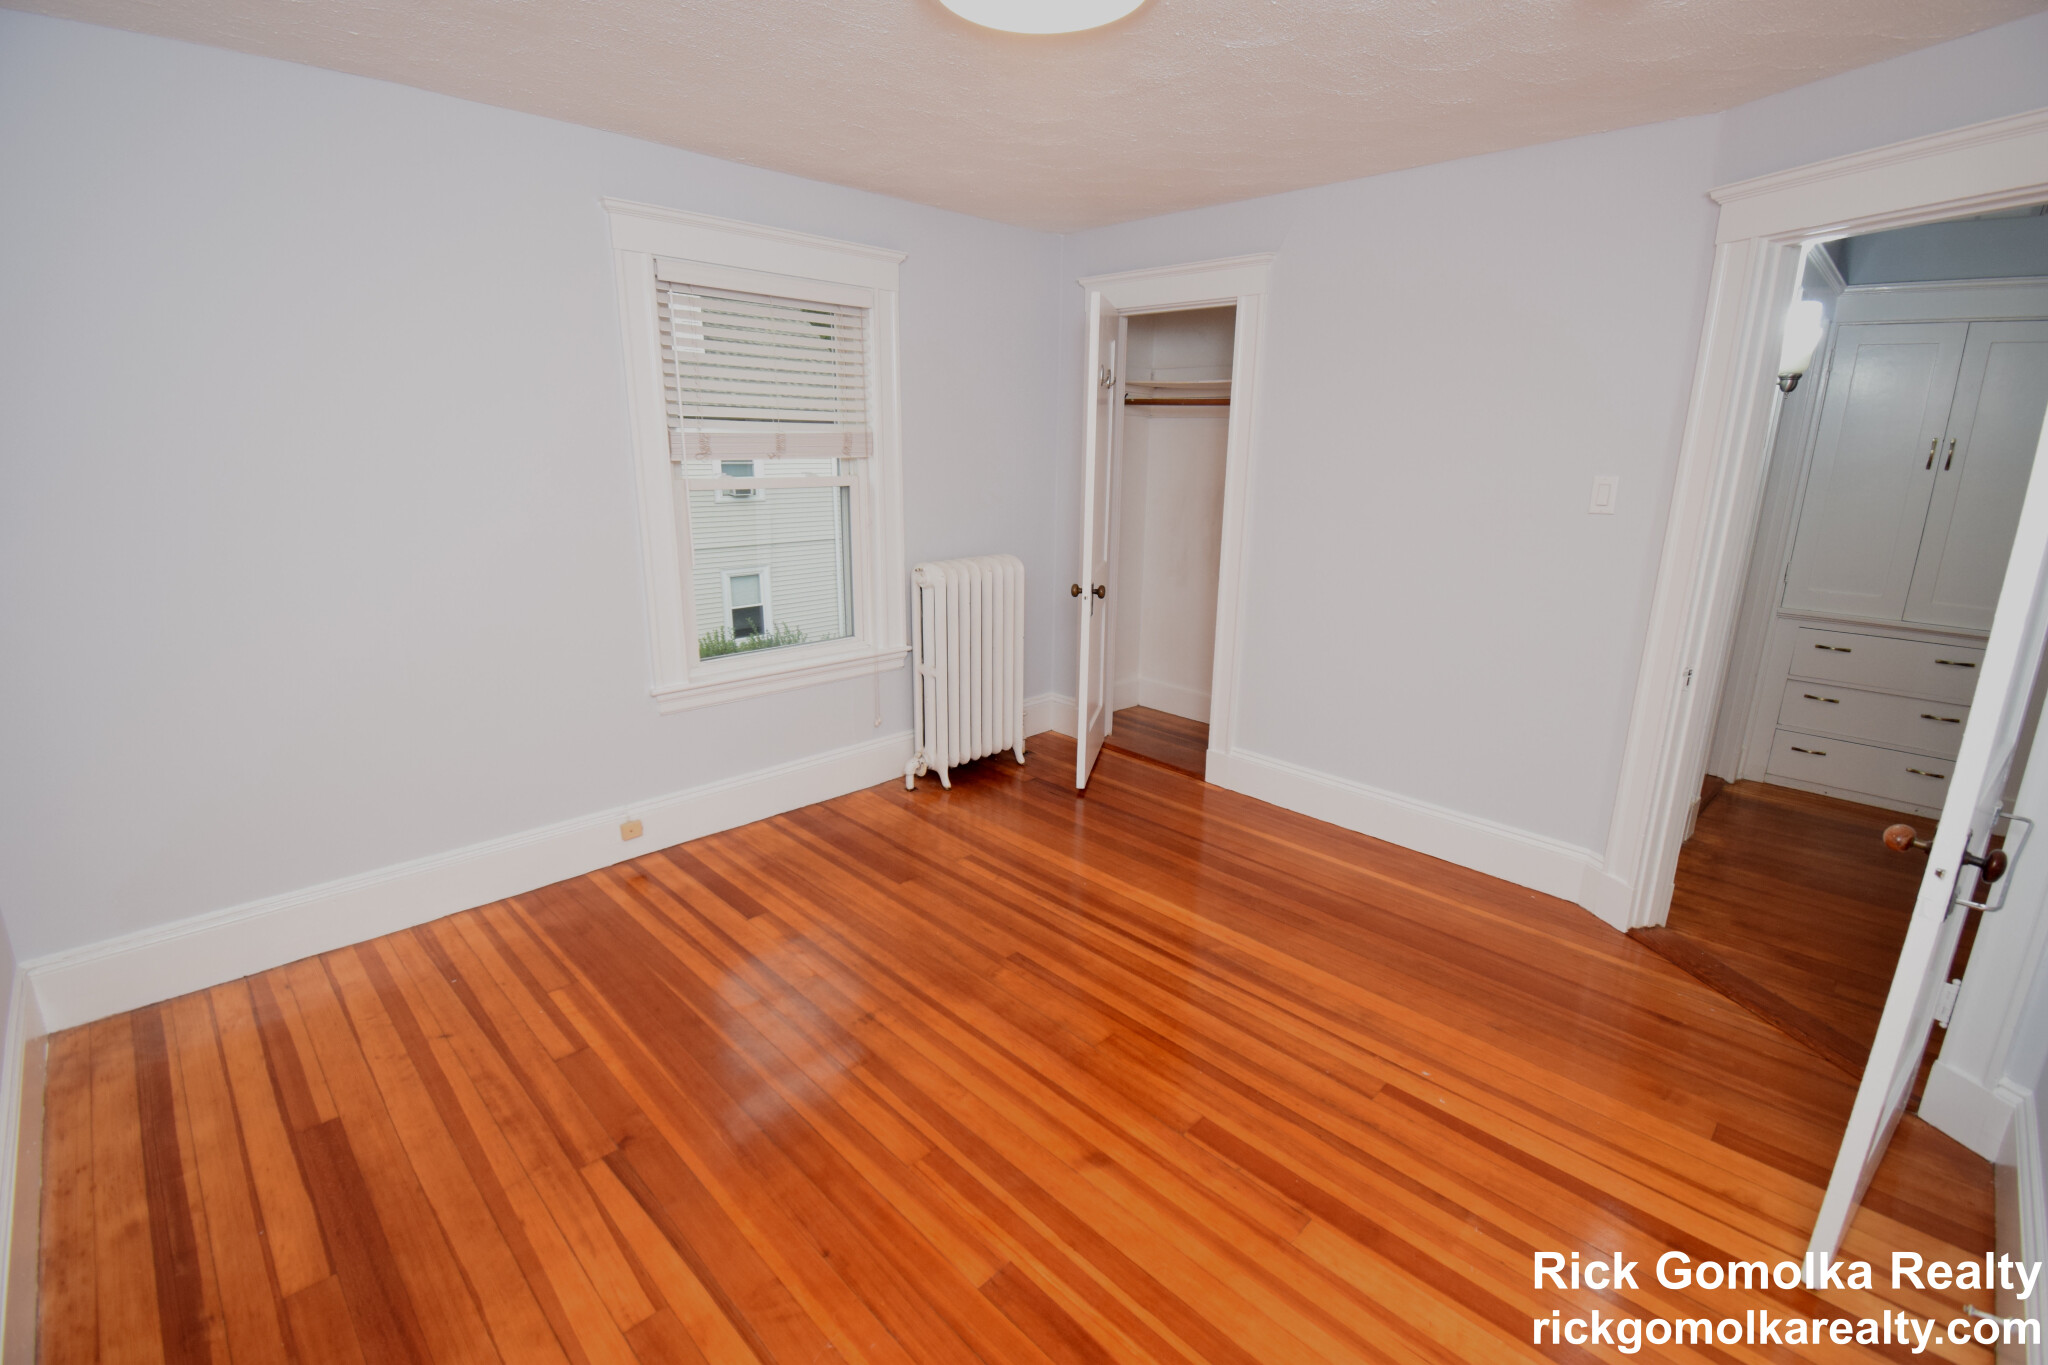 Photos of apartment on Beacon St.,Newton MA 02461